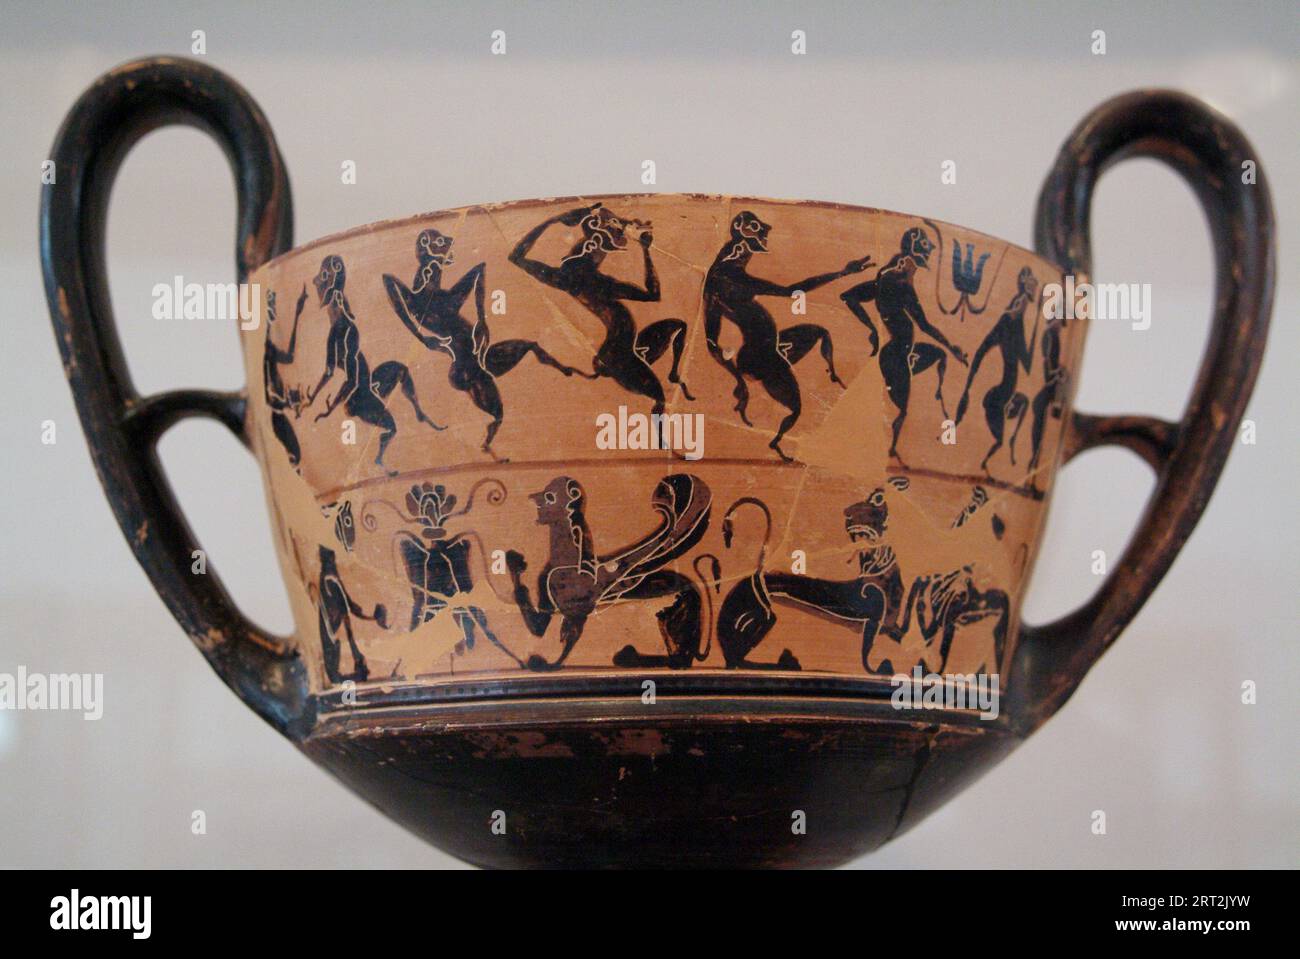 Anfora di figure danzanti e una sfinge, il Museo Archeologico di Tebe, che raffigura la storia di Tebe dal Neolitico all'Ottamano, Thiva, Grecia, 2003. Foto Stock